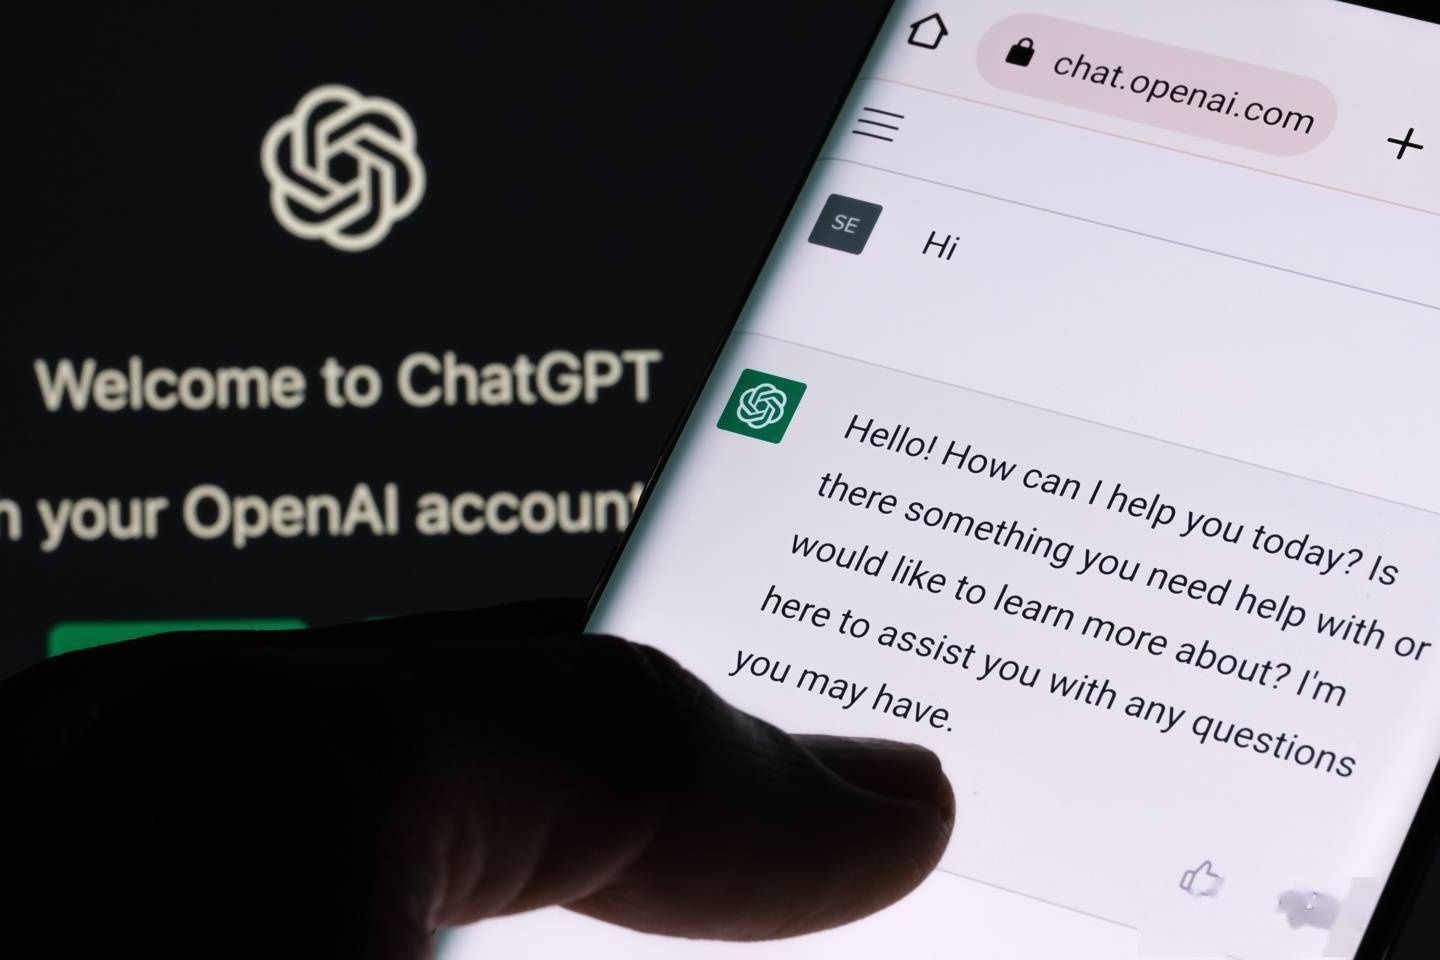 iOS版ChatGPT集成必应搜索功能 只对付费用户开放